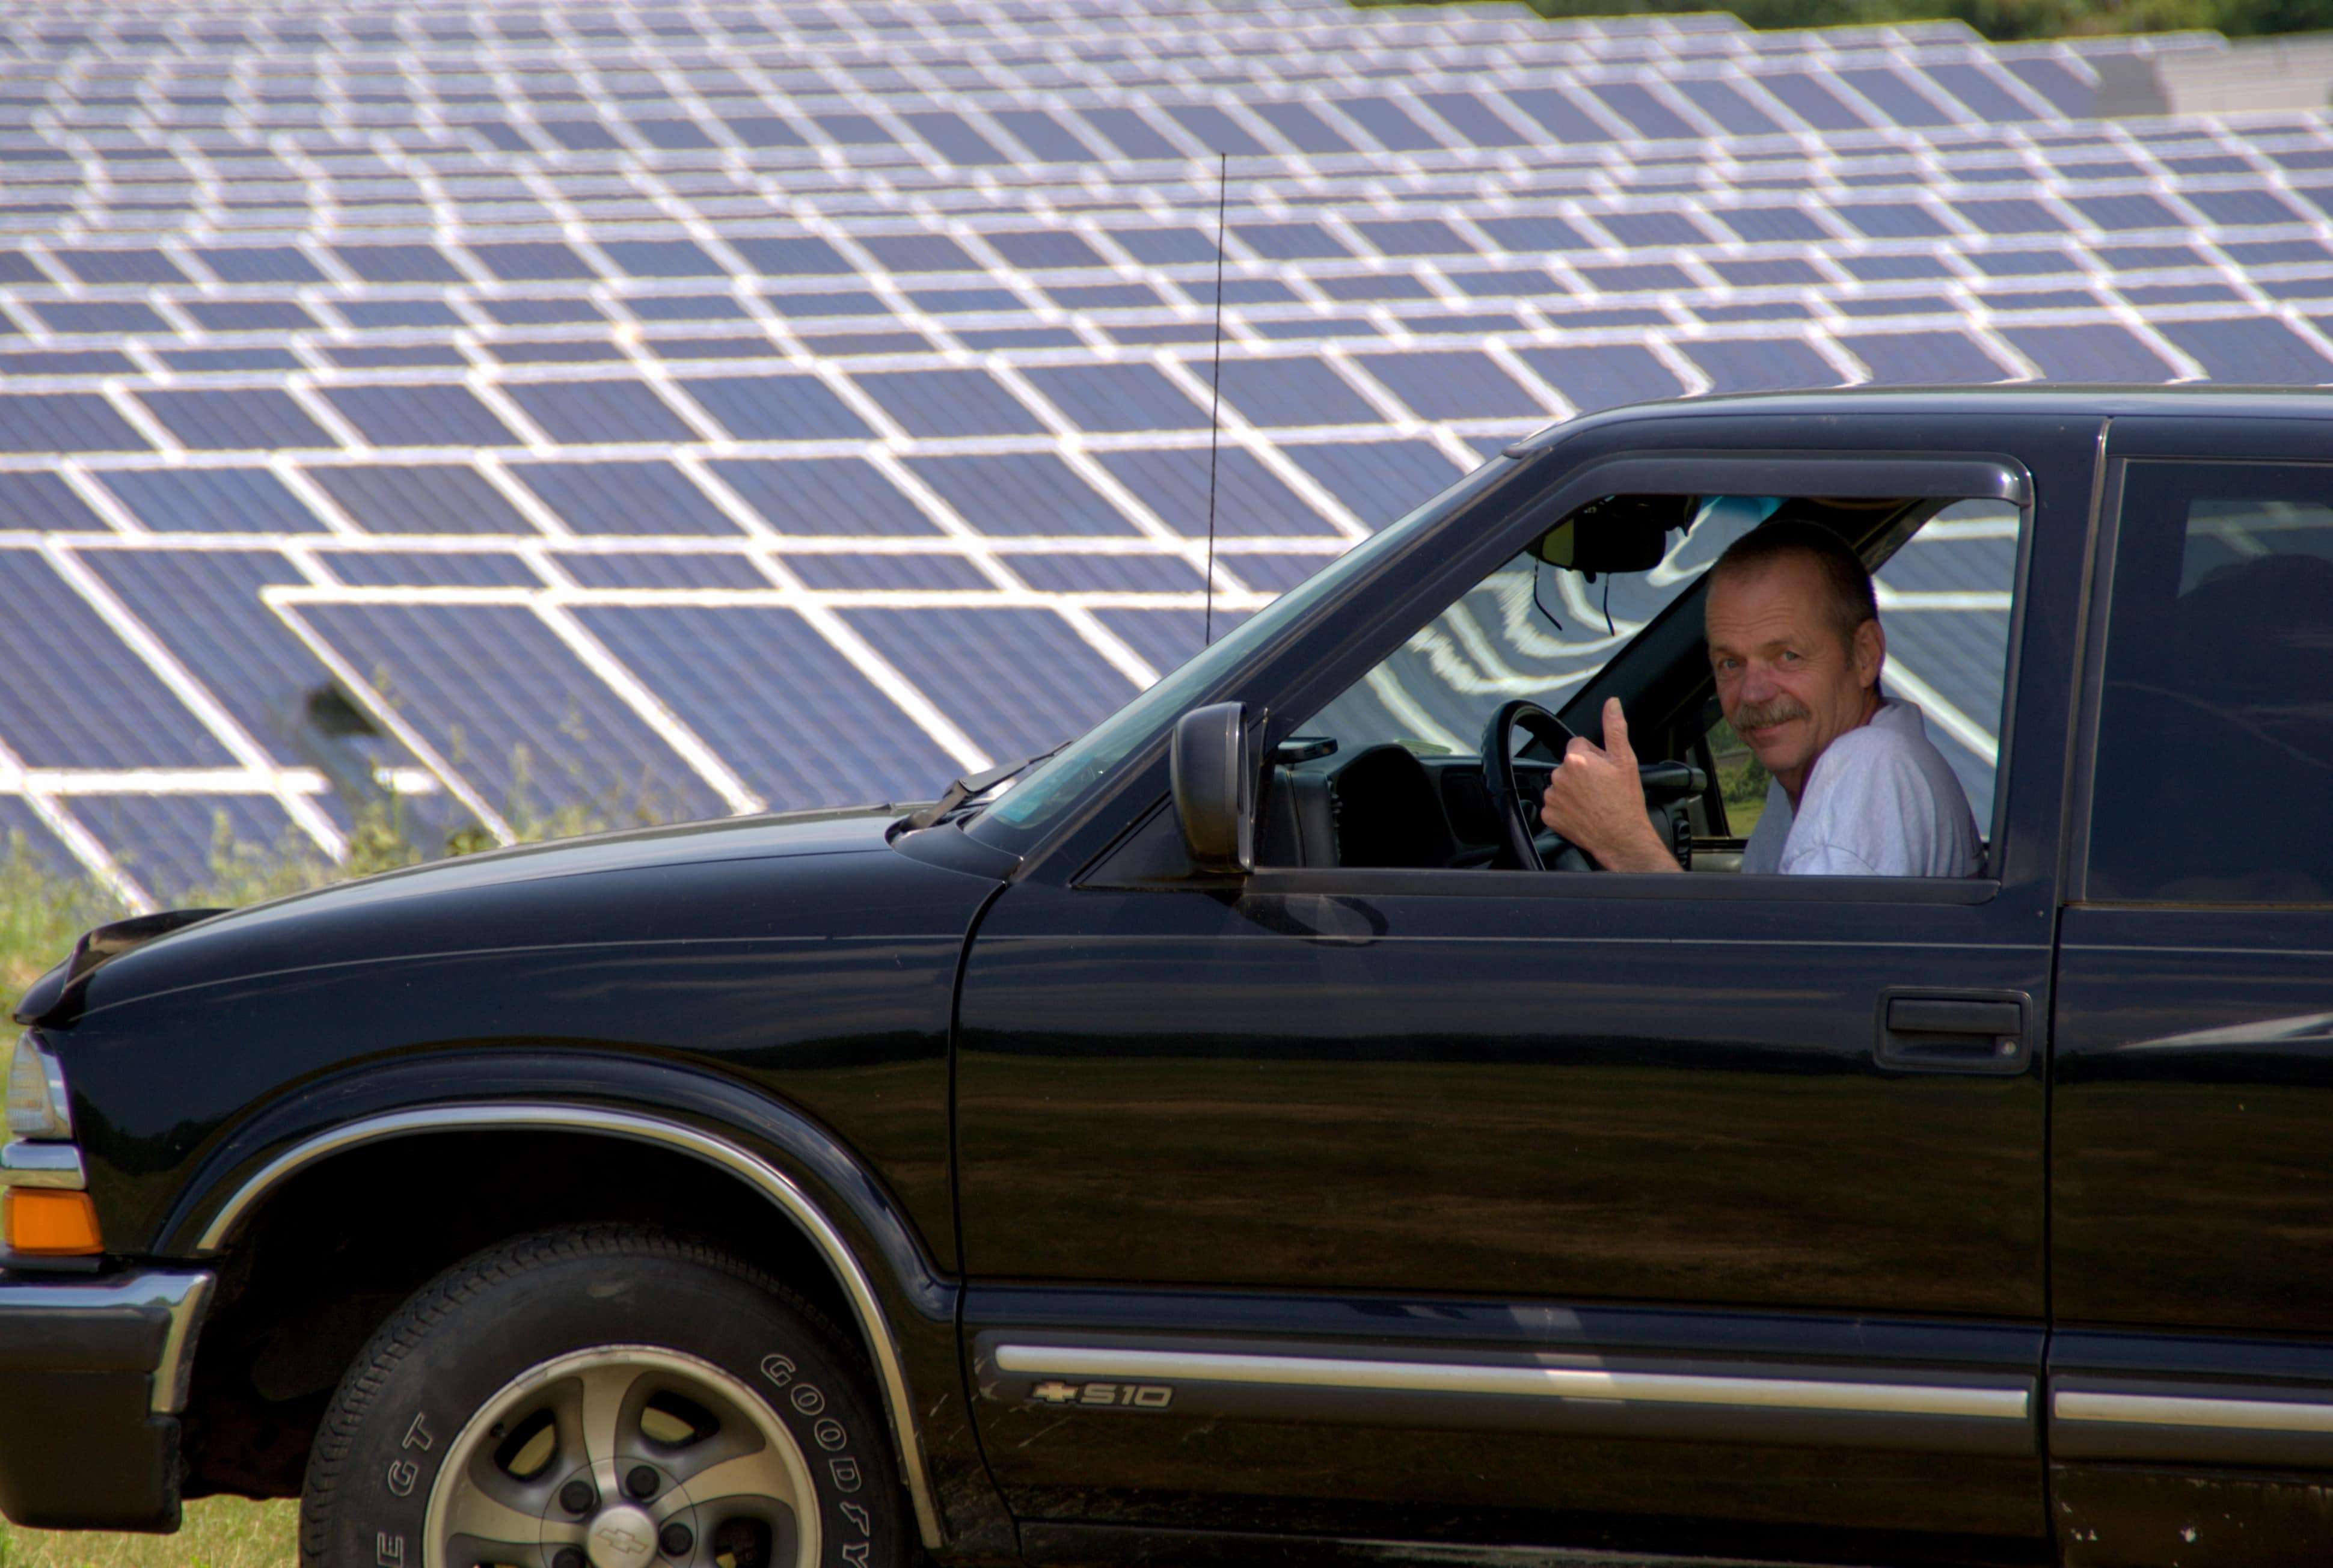 Ken Langevin landowner of Draper community solar farm